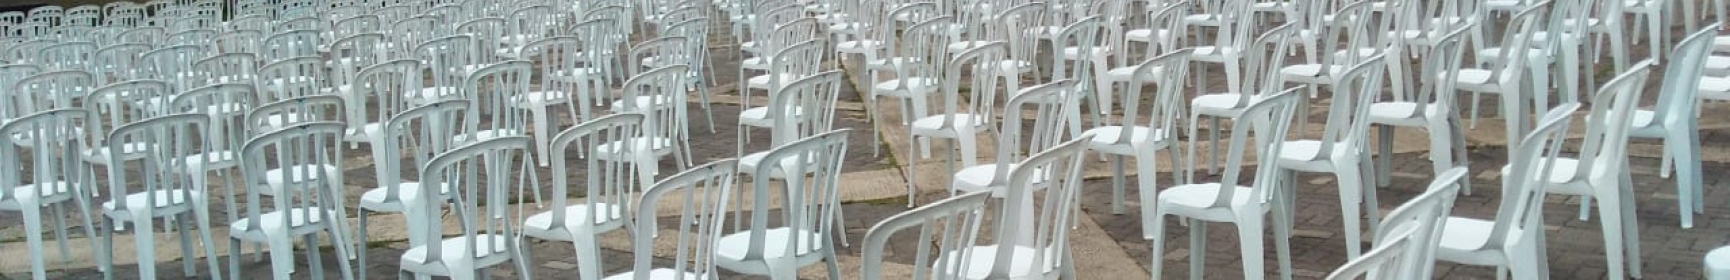 Aluguel De Mesas e Cadeiras Aluguel de cadeiras para Eventos sorocaba Locação de Mesas e Cadeira Sorocaba